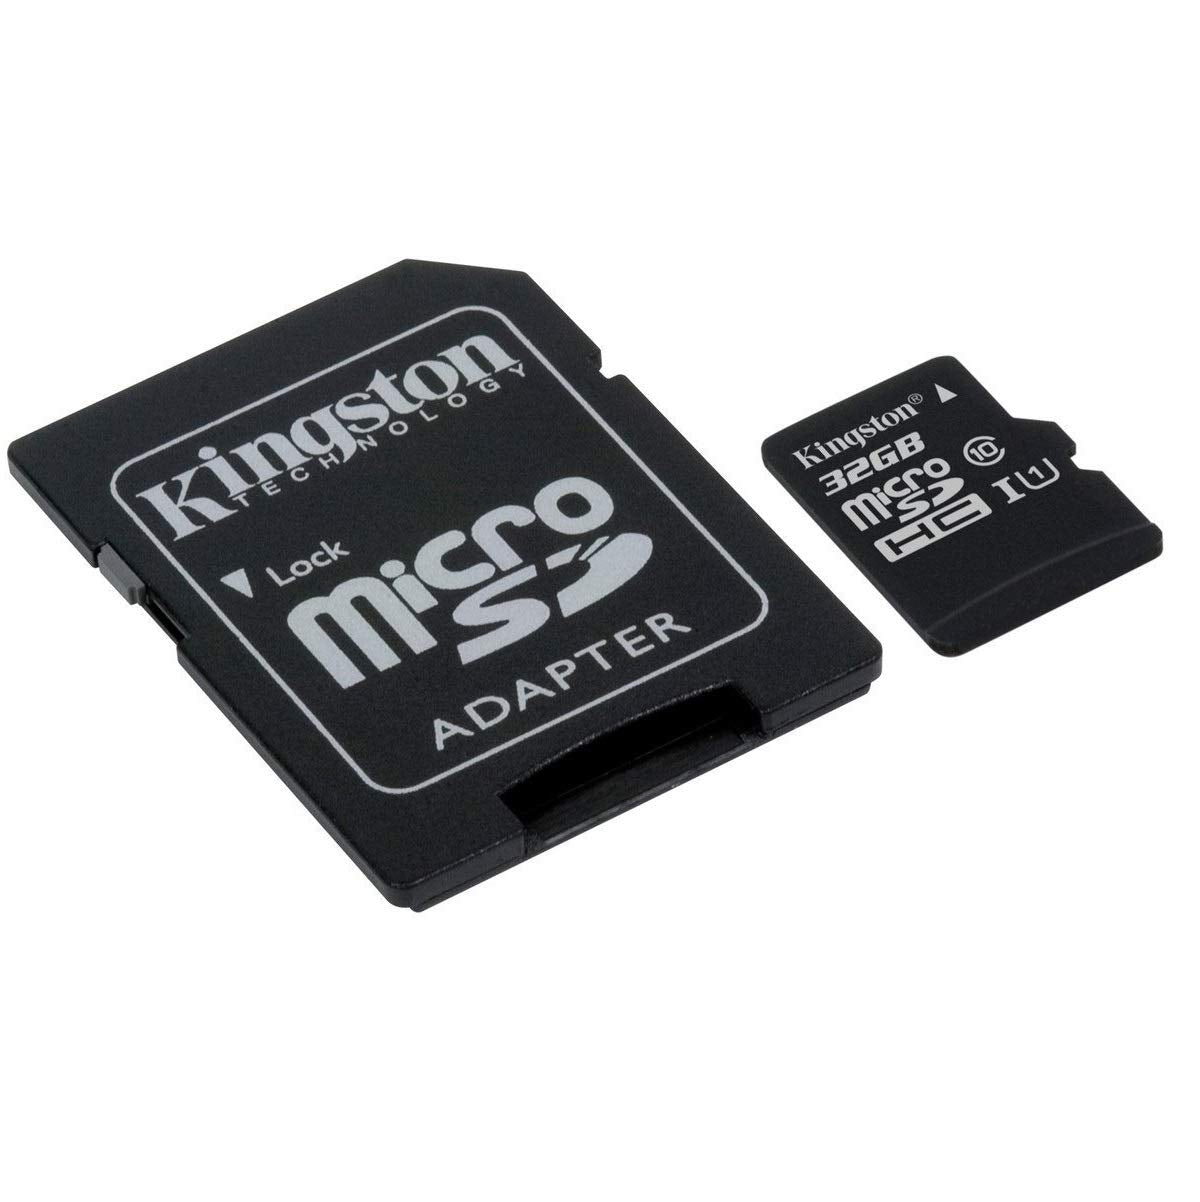 Memoria Micro SD Kingston SDHC 32GB Clase 10 con adaptador